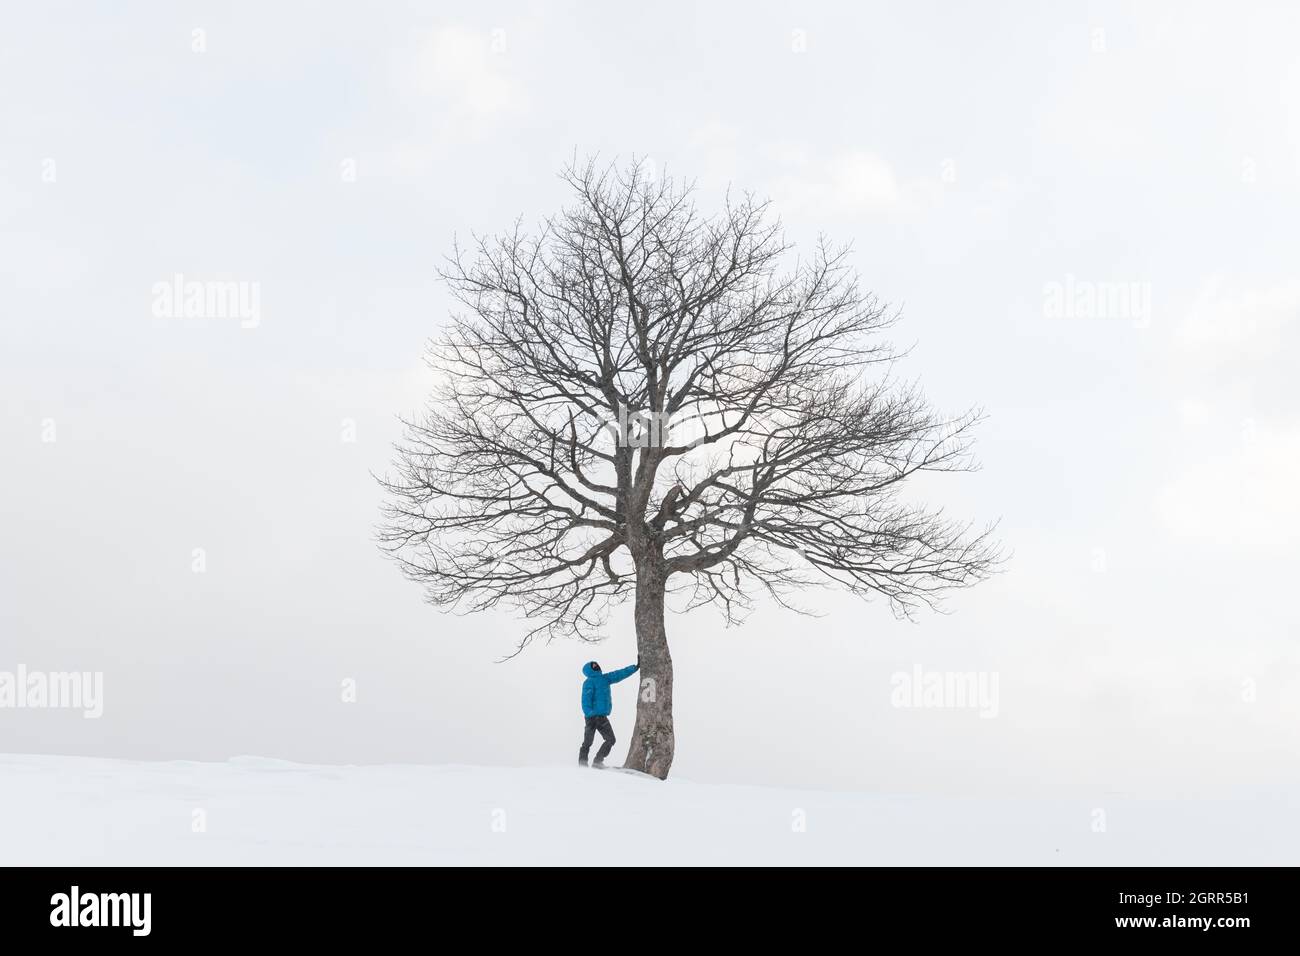 Erstaunliche Landschaft mit einem Mann in der Nähe von einsamen schneebedeckten Baum in einem Winterfeld. Minimalistische Szene bei bewölktem und nebligen Wetter Stockfoto